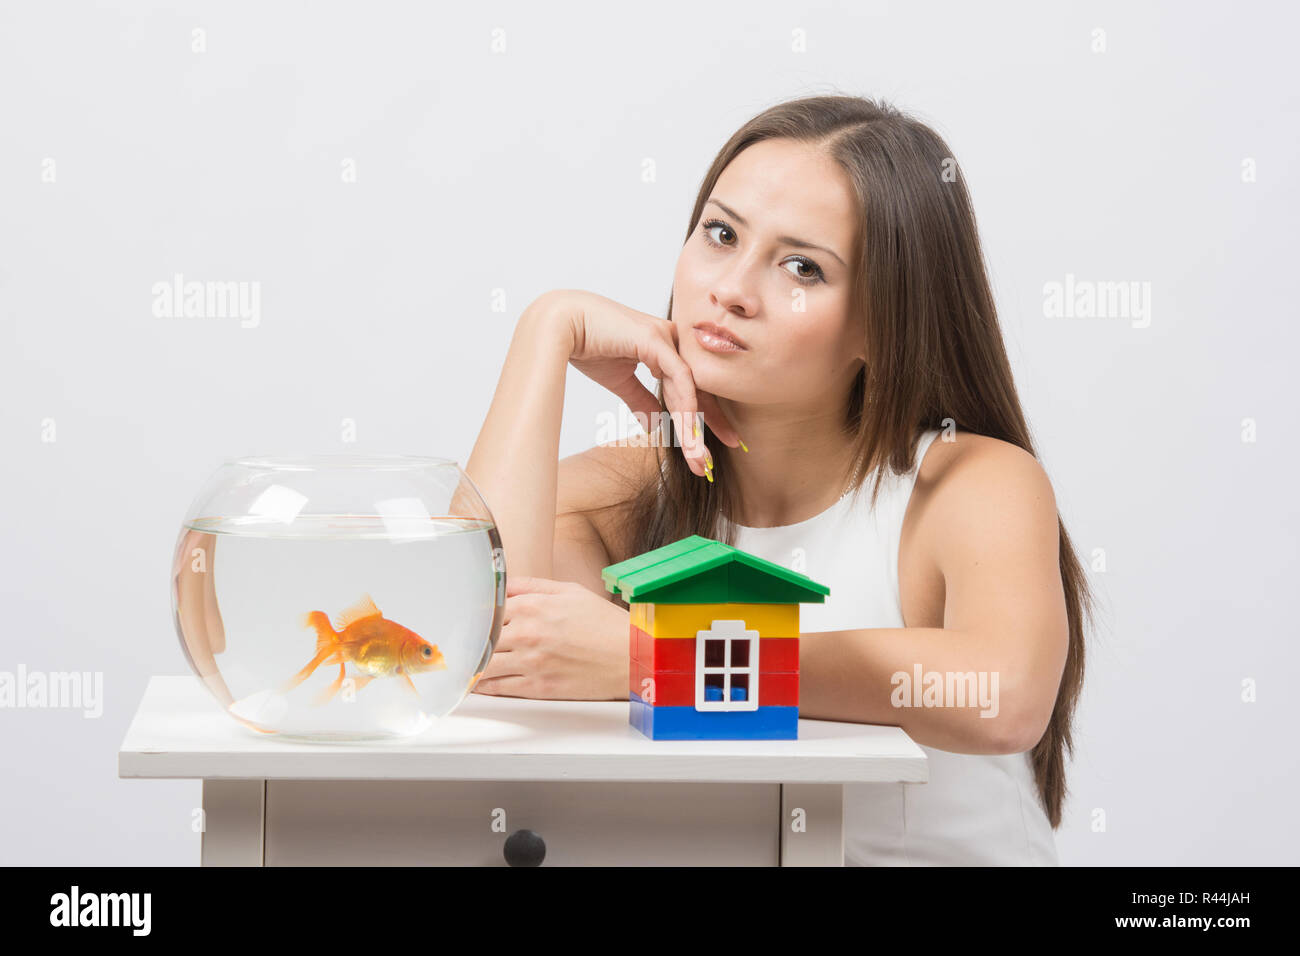 Premurosa ragazza seduta a un tavolo su cui vi è un acquario con pesci rossi e toy house Foto Stock